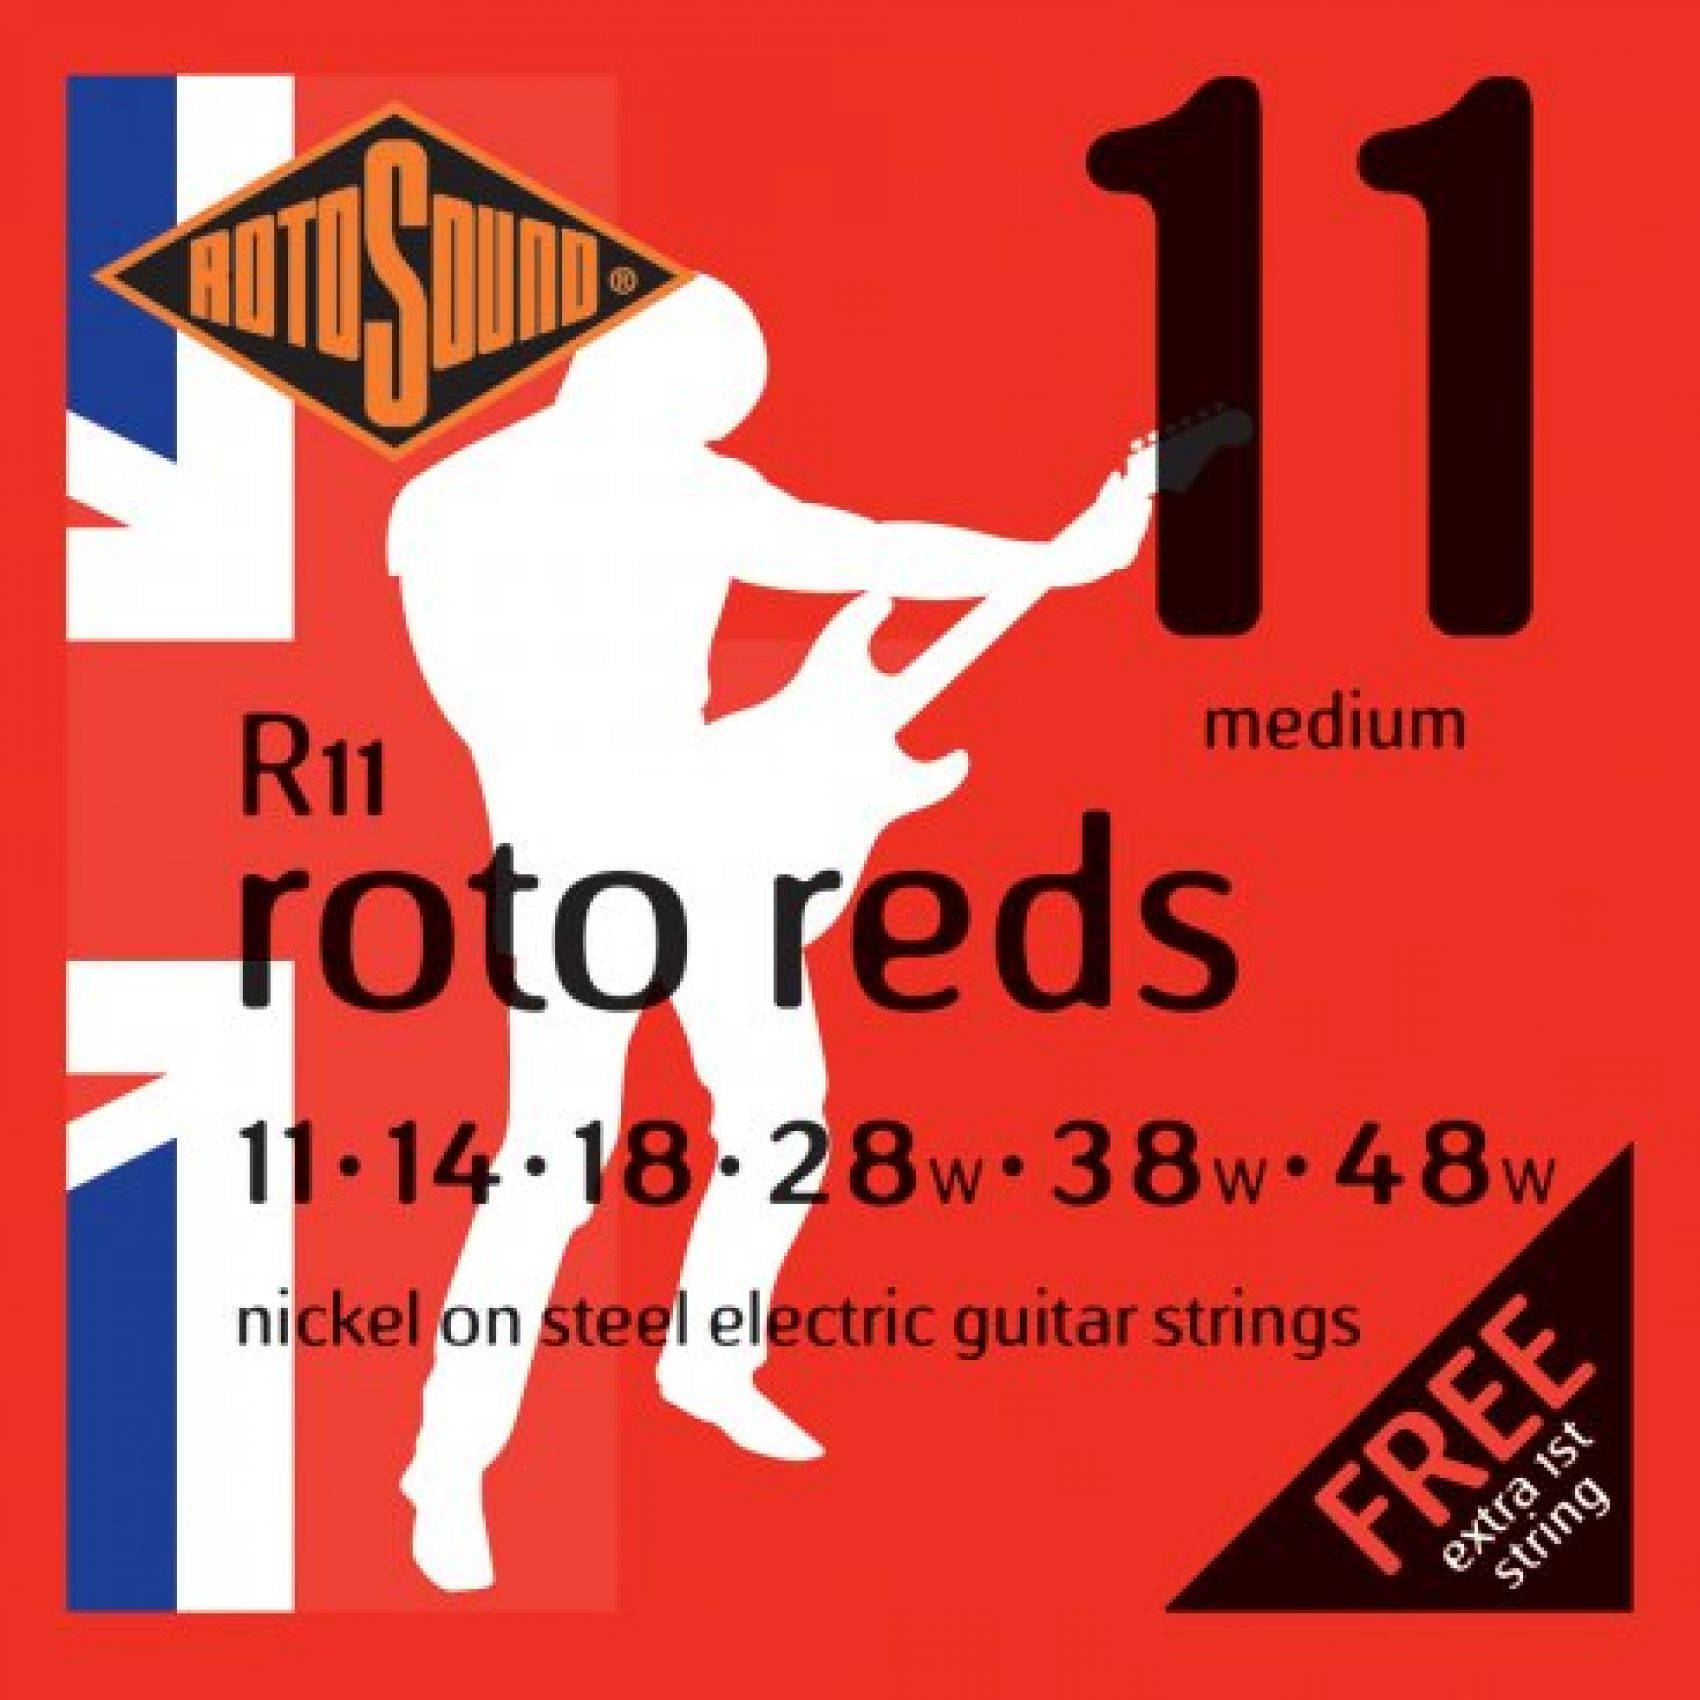 ROTOSOUND R-11 - Cordiera per chitarra elettrica 011/048w